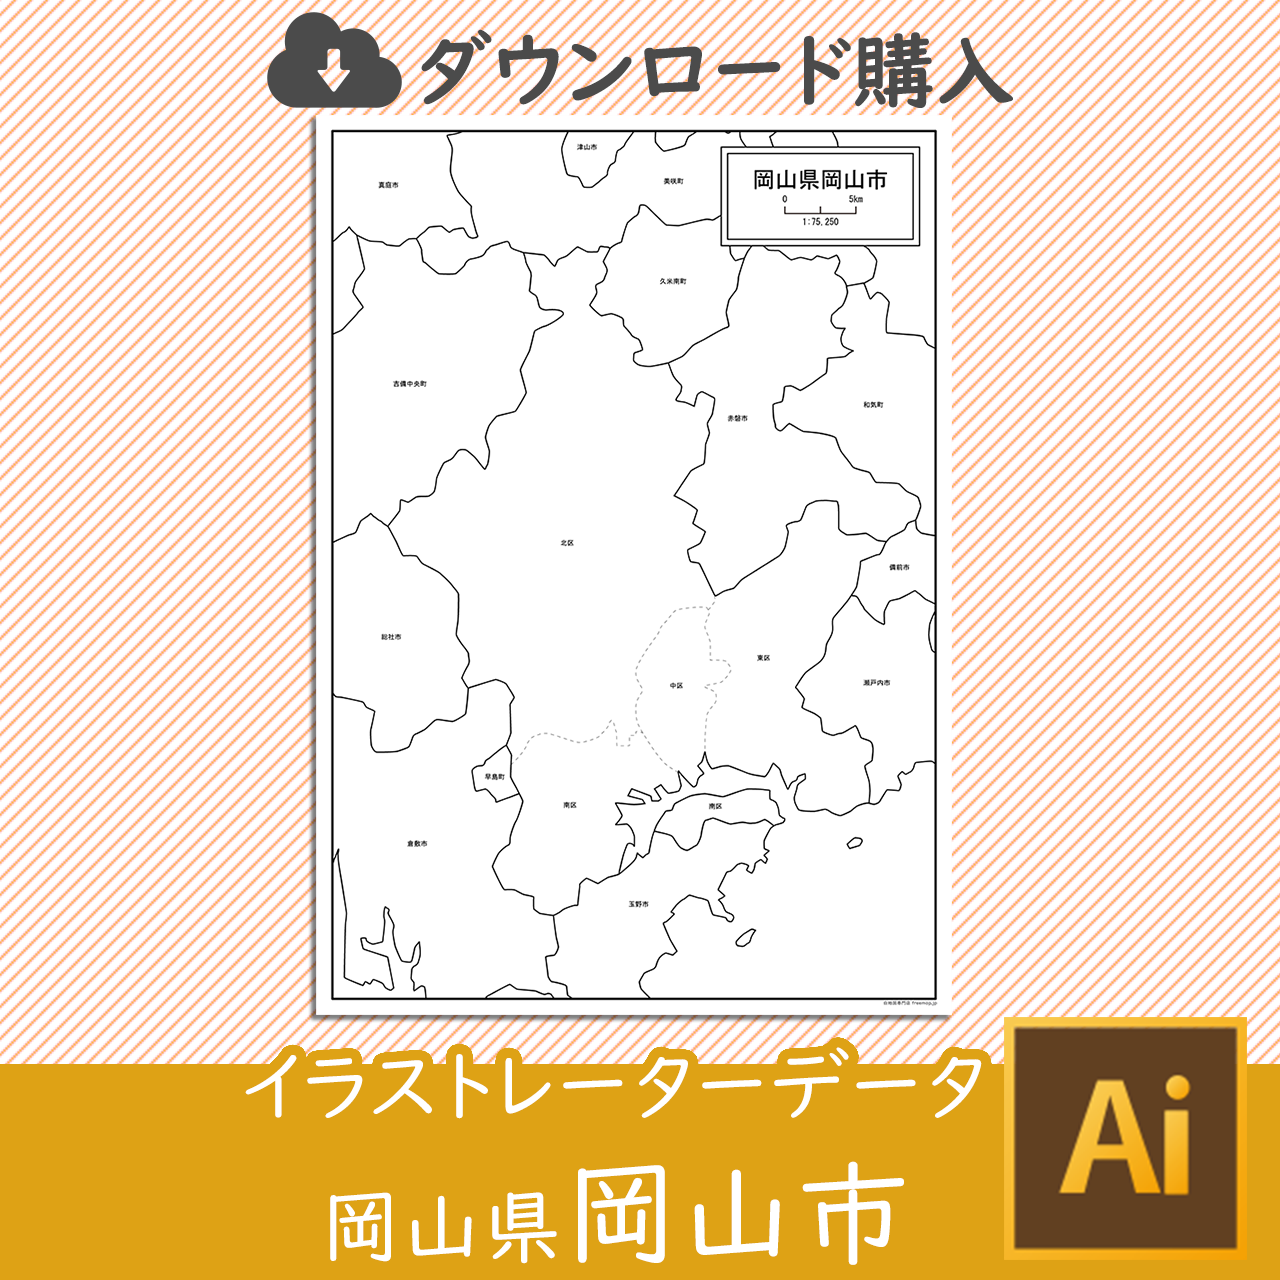 岡山市のaiデータのサムネイル画像